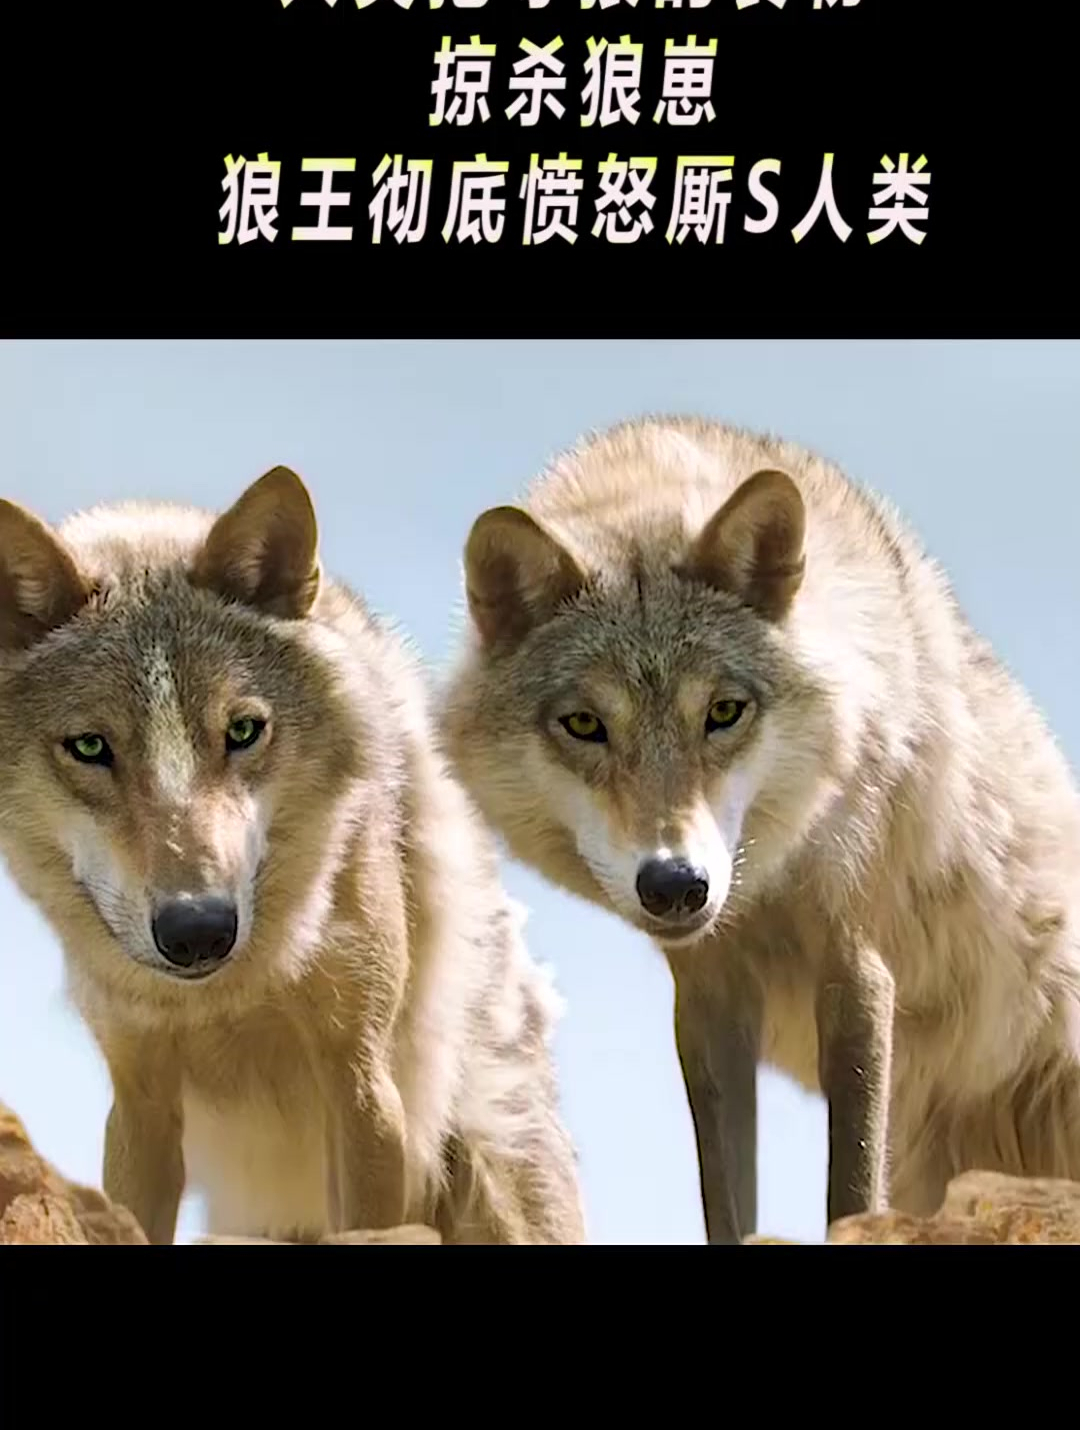 人类抢夺狼的食物,掠杀狼崽,狼王彻底愤怒厮s人类(2)